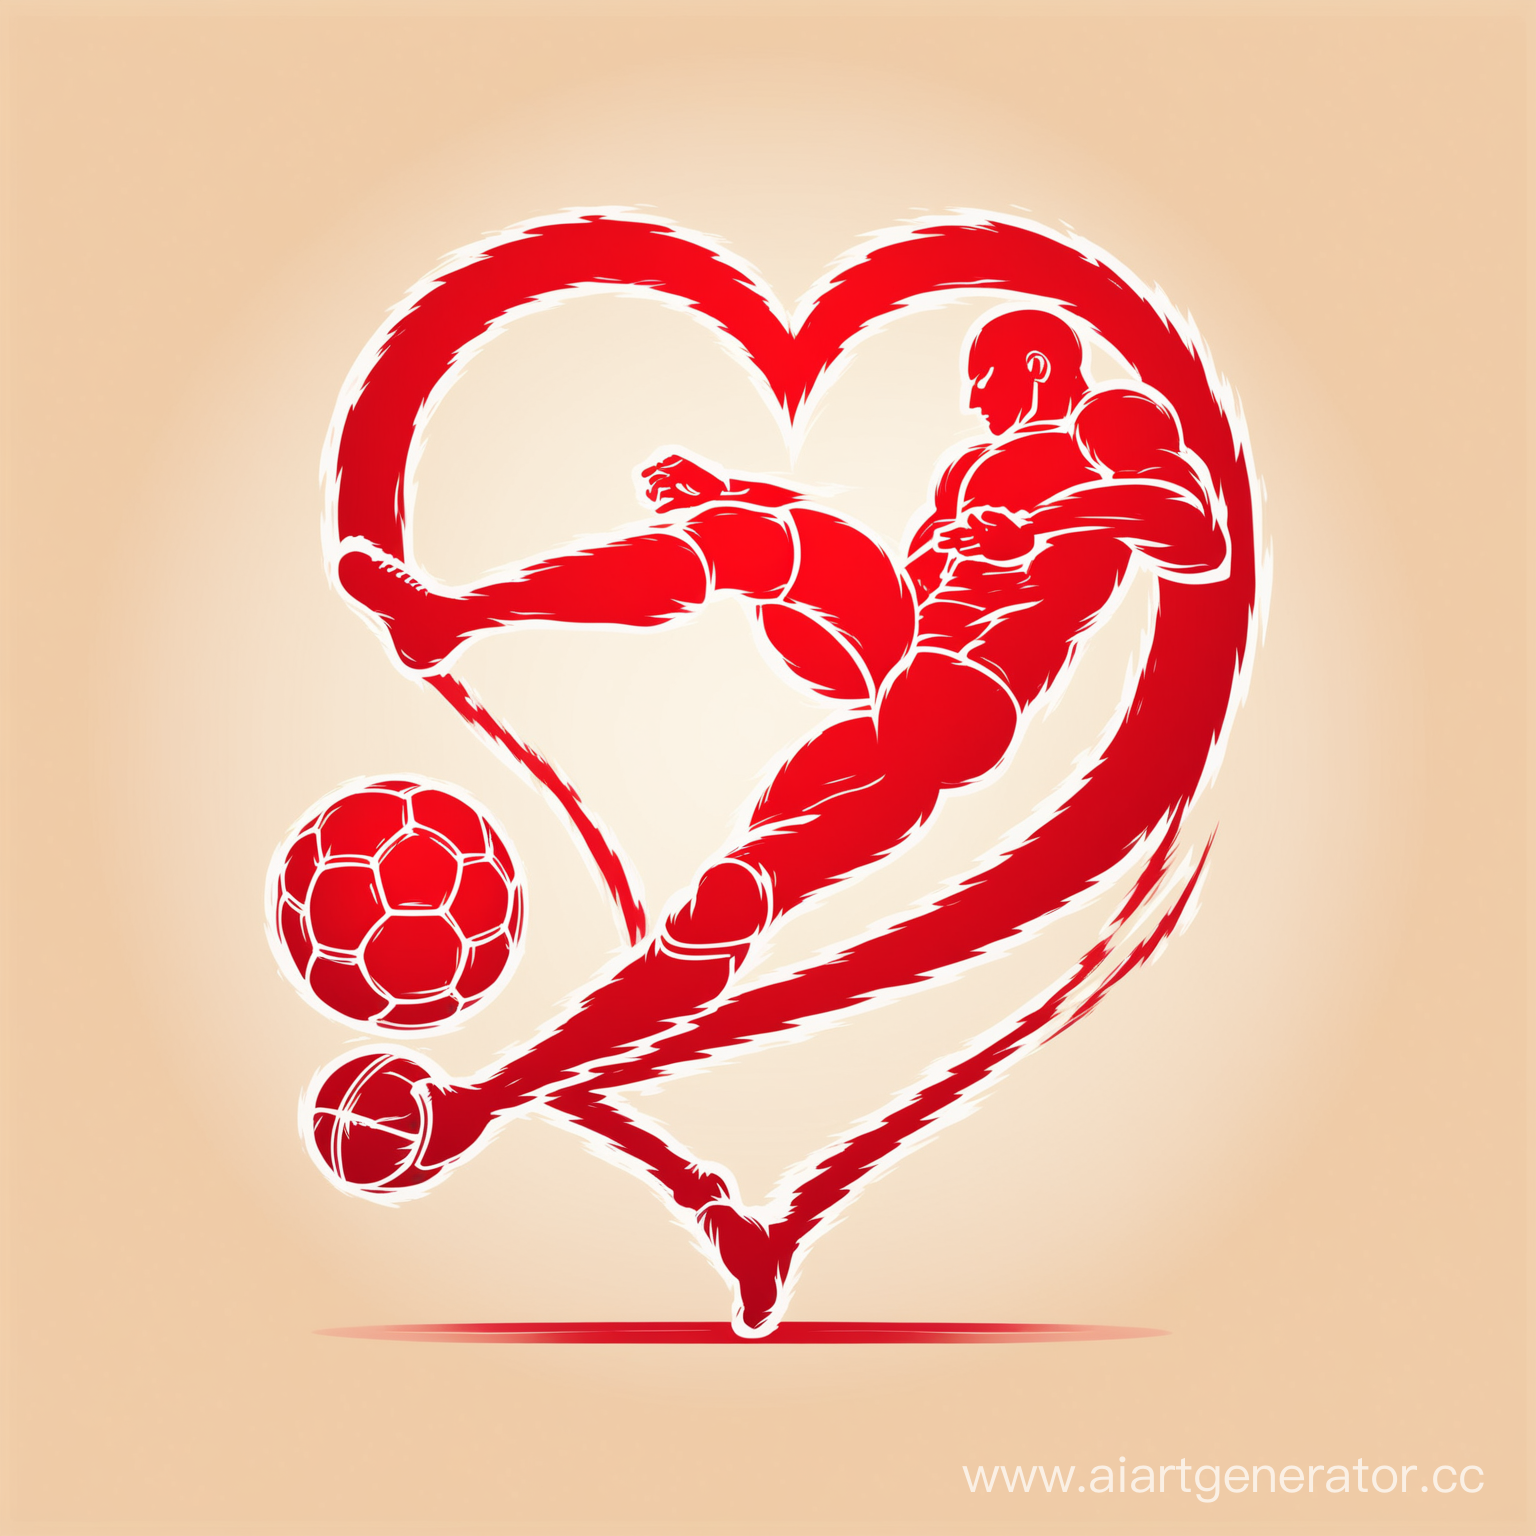 Человеческое сердце, которое собрано из образа футболиста пинающего мяч. Для логотипа